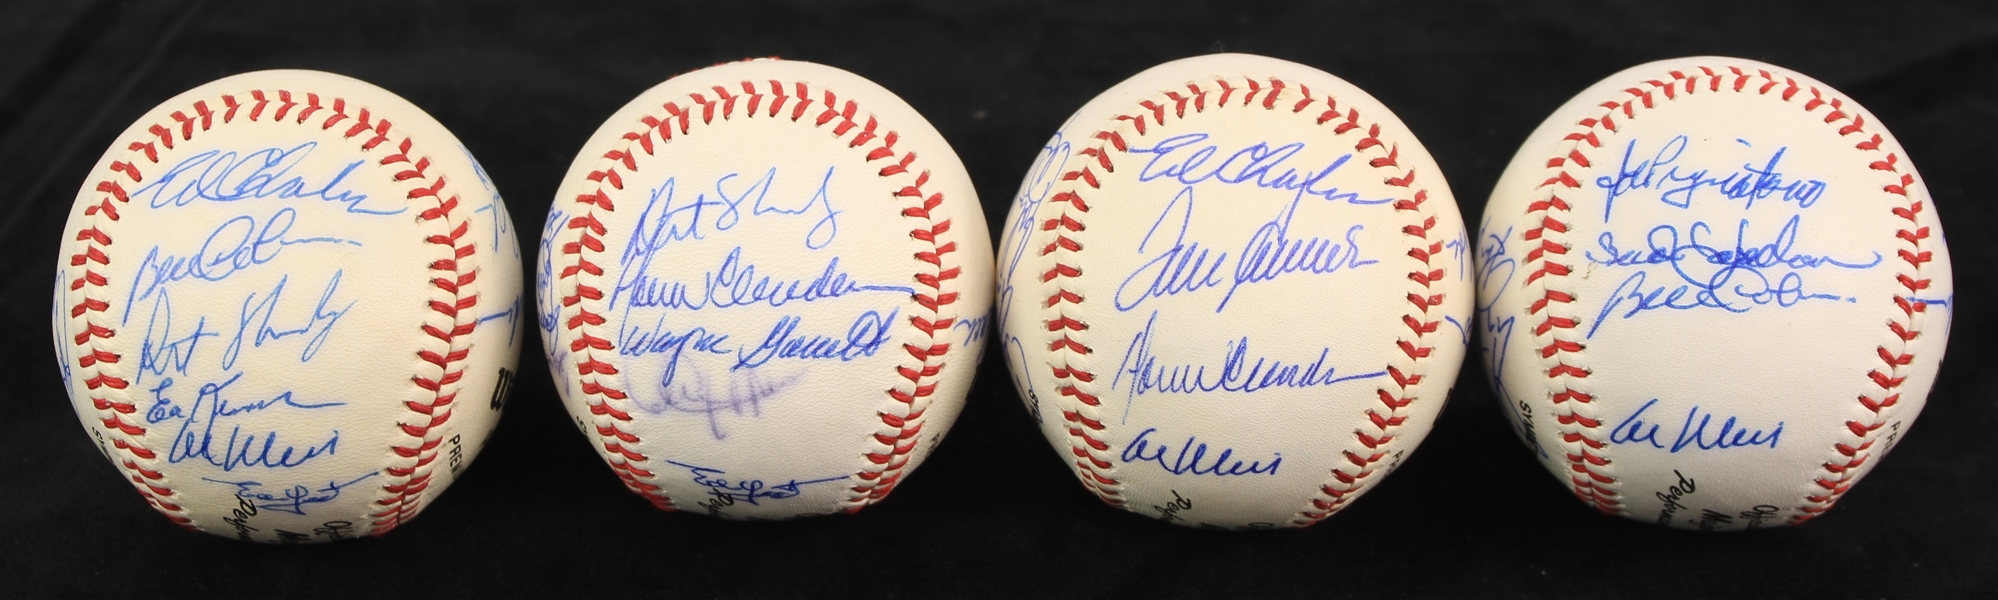 1969 New York Mets Multi Signed Baseballs - Lot of 4 w/ Tom Seaver, Tommie Agee, Jerry Koosman & More (JSA/Mets Employee LOA)